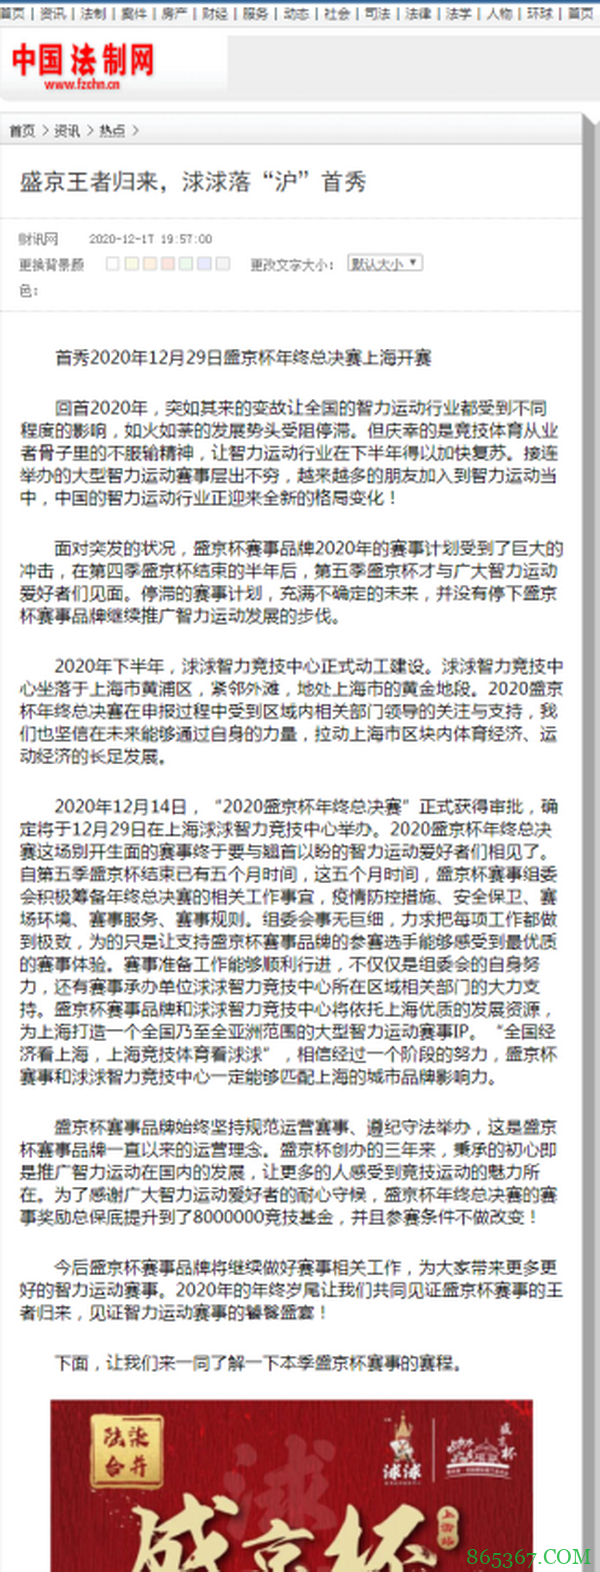 中国法律网、中国法制网共同宣发！今日头条首页推荐，盛京杯华丽回归！